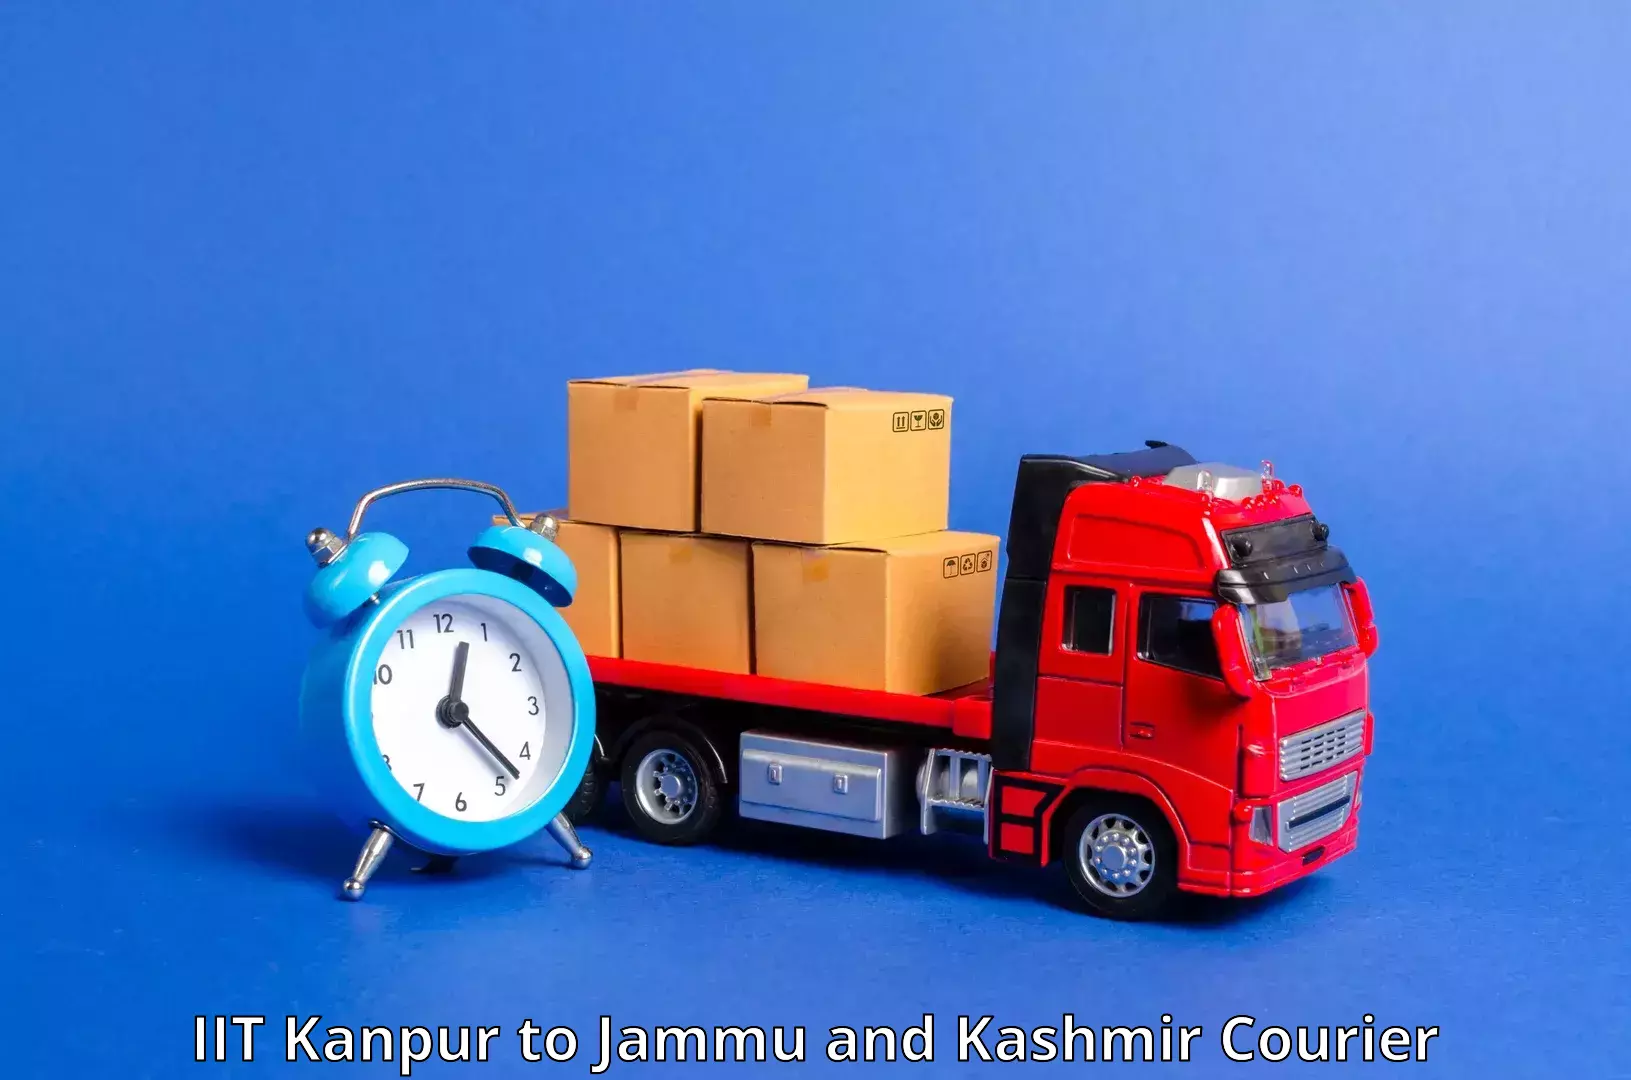 Express postal services IIT Kanpur to Kargil